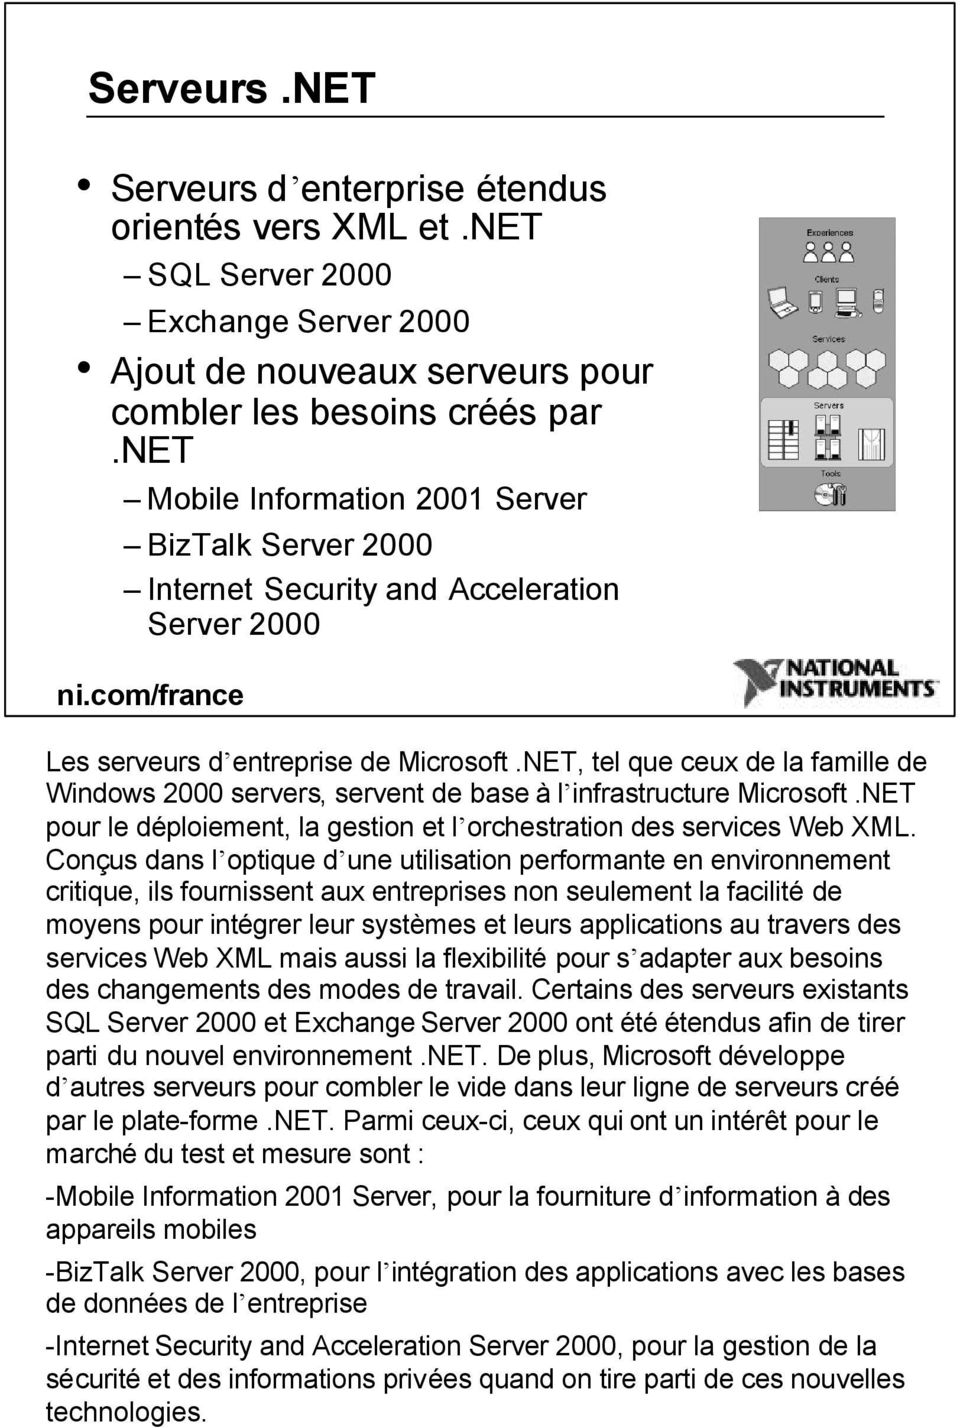 NET, tel que ceux de la famille de Windows 2000 servers, servent de base à l infrastructure Microsoft.NET pour le déploiement, la gestion et l orchestration des services Web XML.